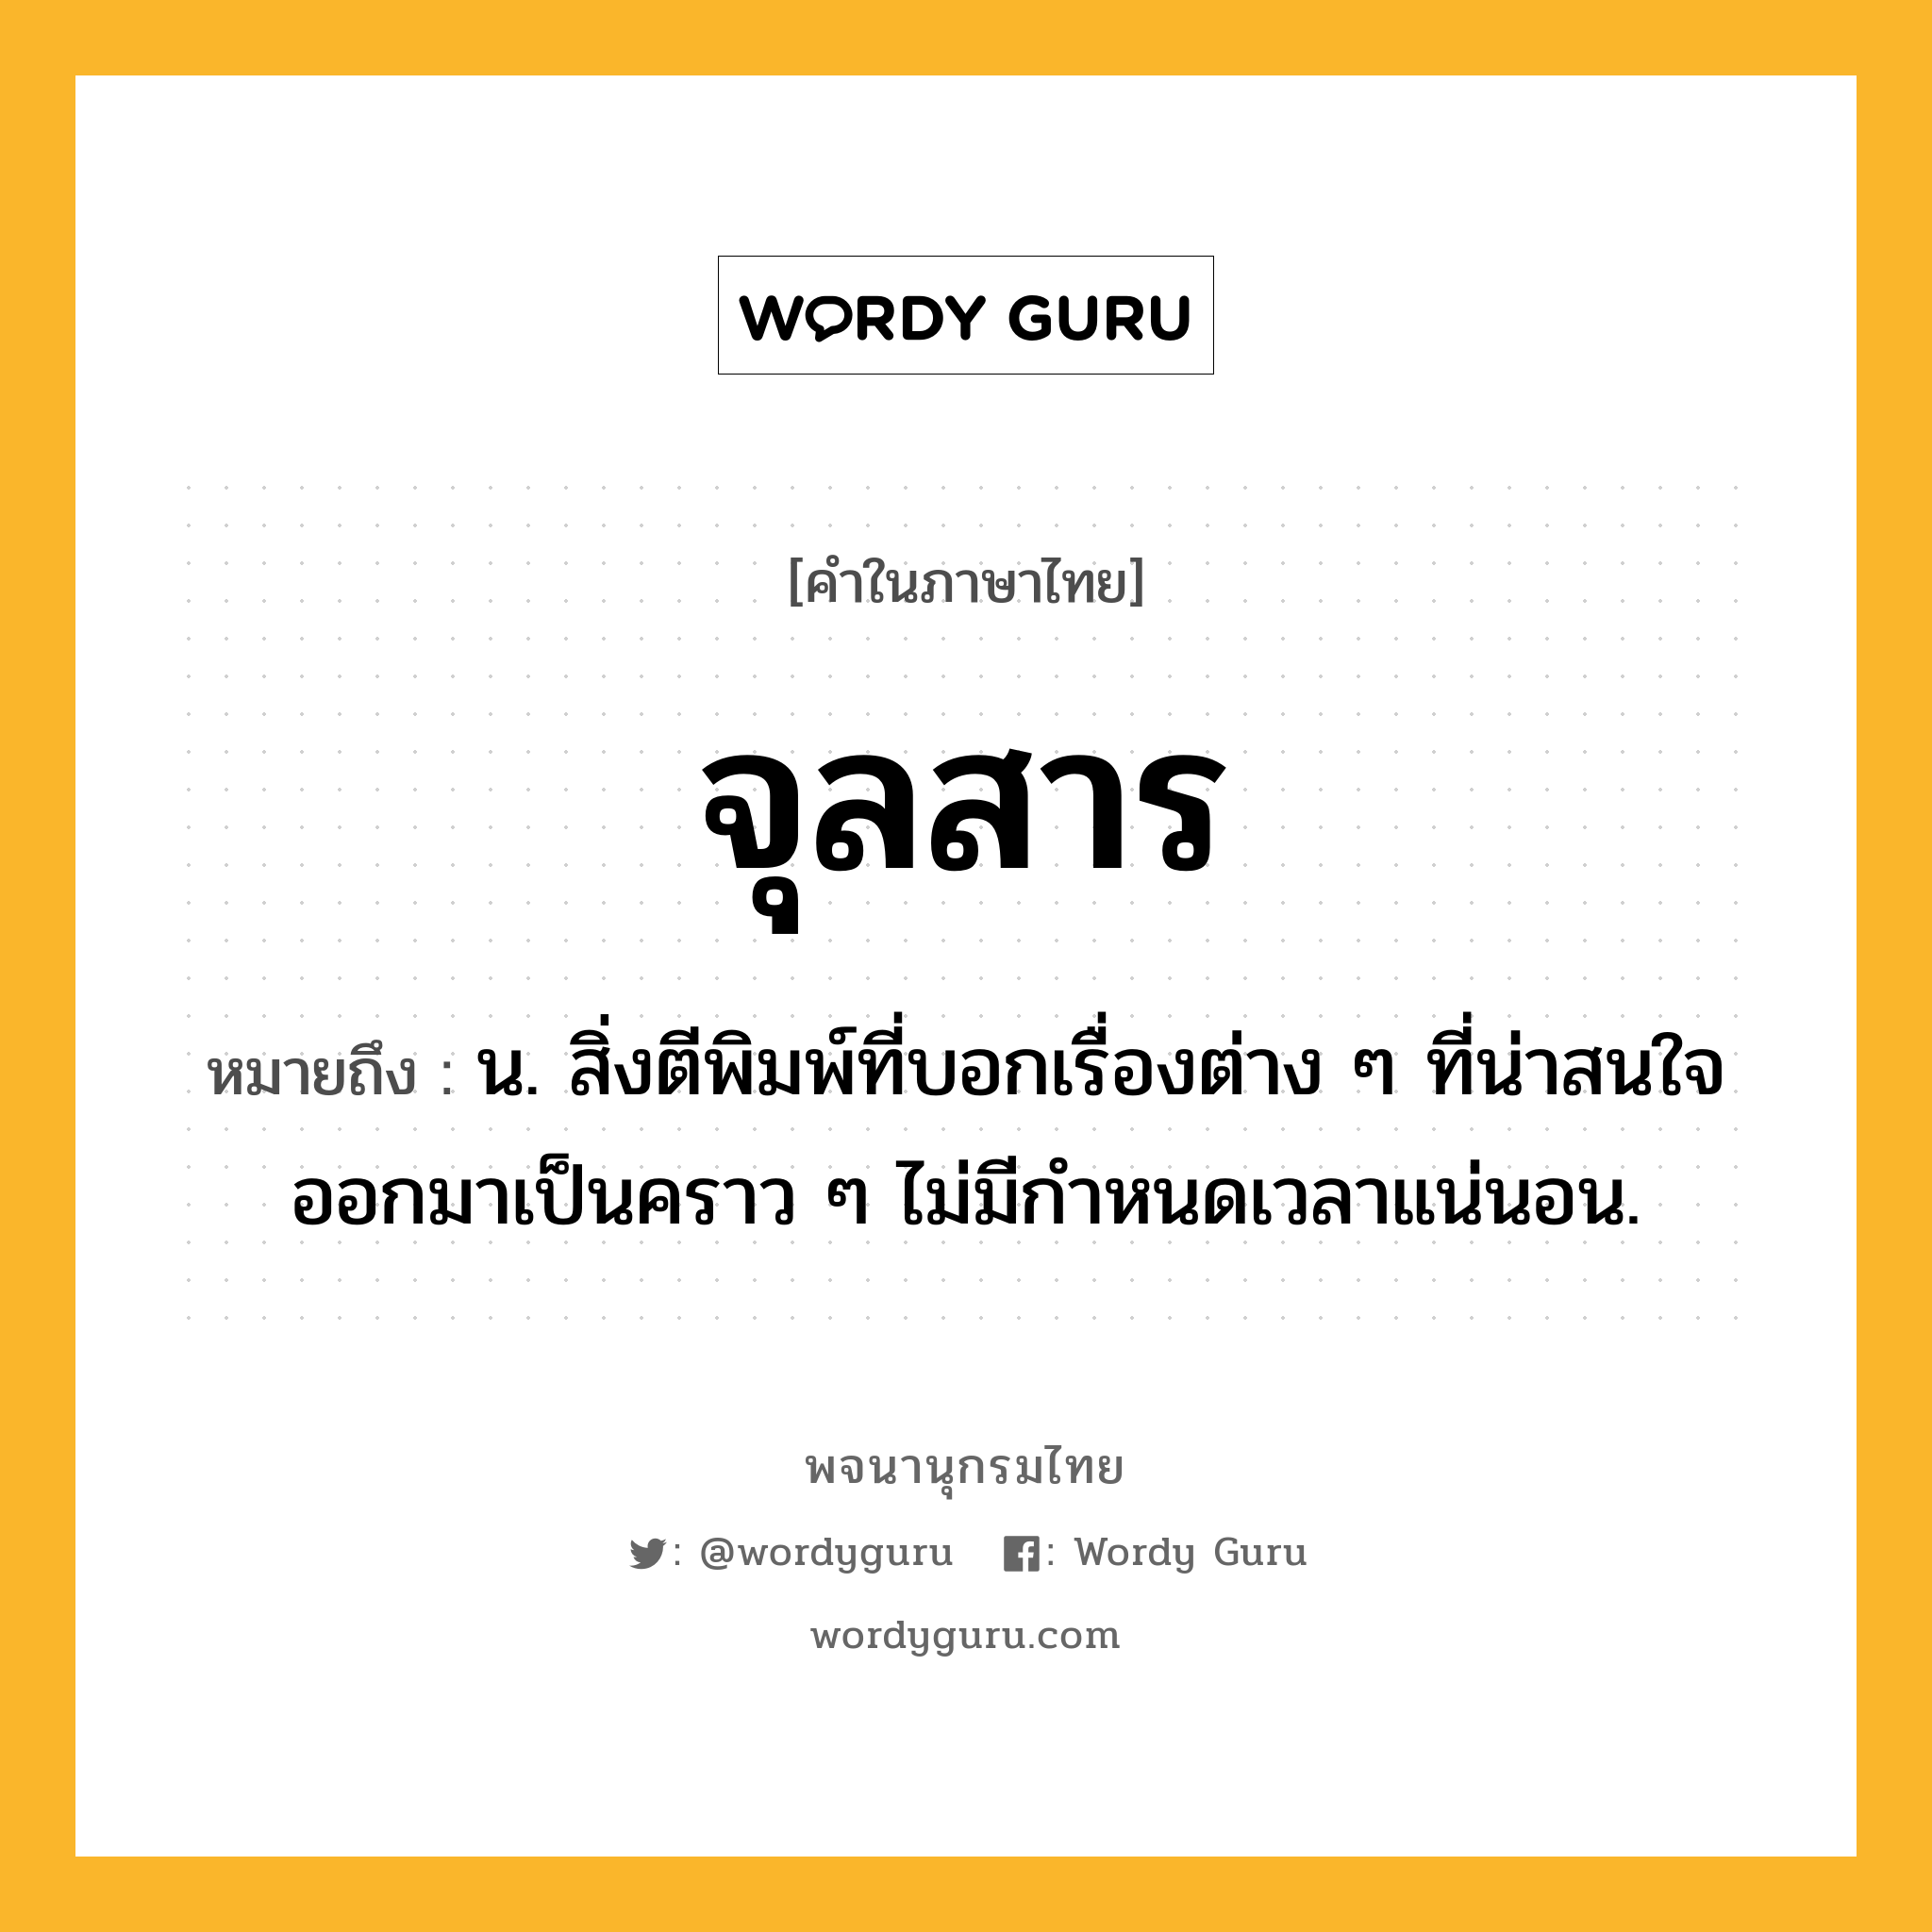 จุลสาร ความหมาย หมายถึงอะไร?, คำในภาษาไทย จุลสาร หมายถึง น. สิ่งตีพิมพ์ที่บอกเรื่องต่าง ๆ ที่น่าสนใจ ออกมาเป็นคราว ๆ ไม่มีกําหนดเวลาแน่นอน.